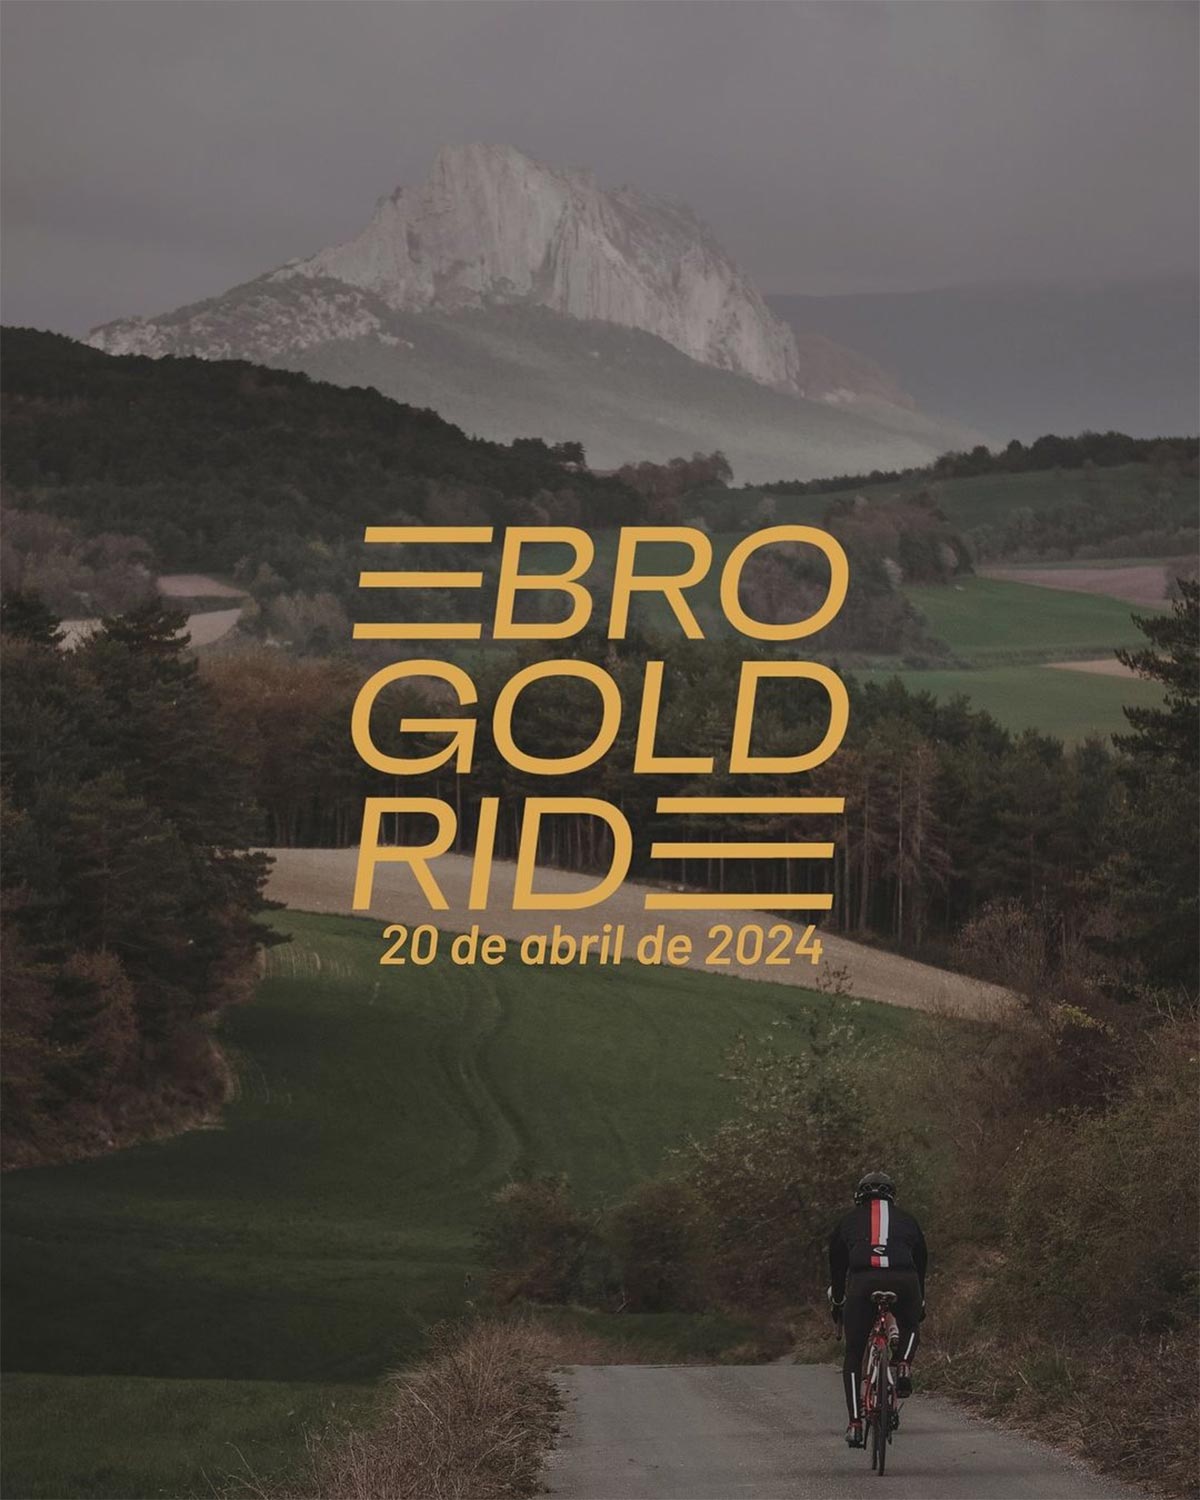 Ebro Gold Ride, una nueva marcha cicloturista al más puro estilo de las clásicas de las Ardenas belgas